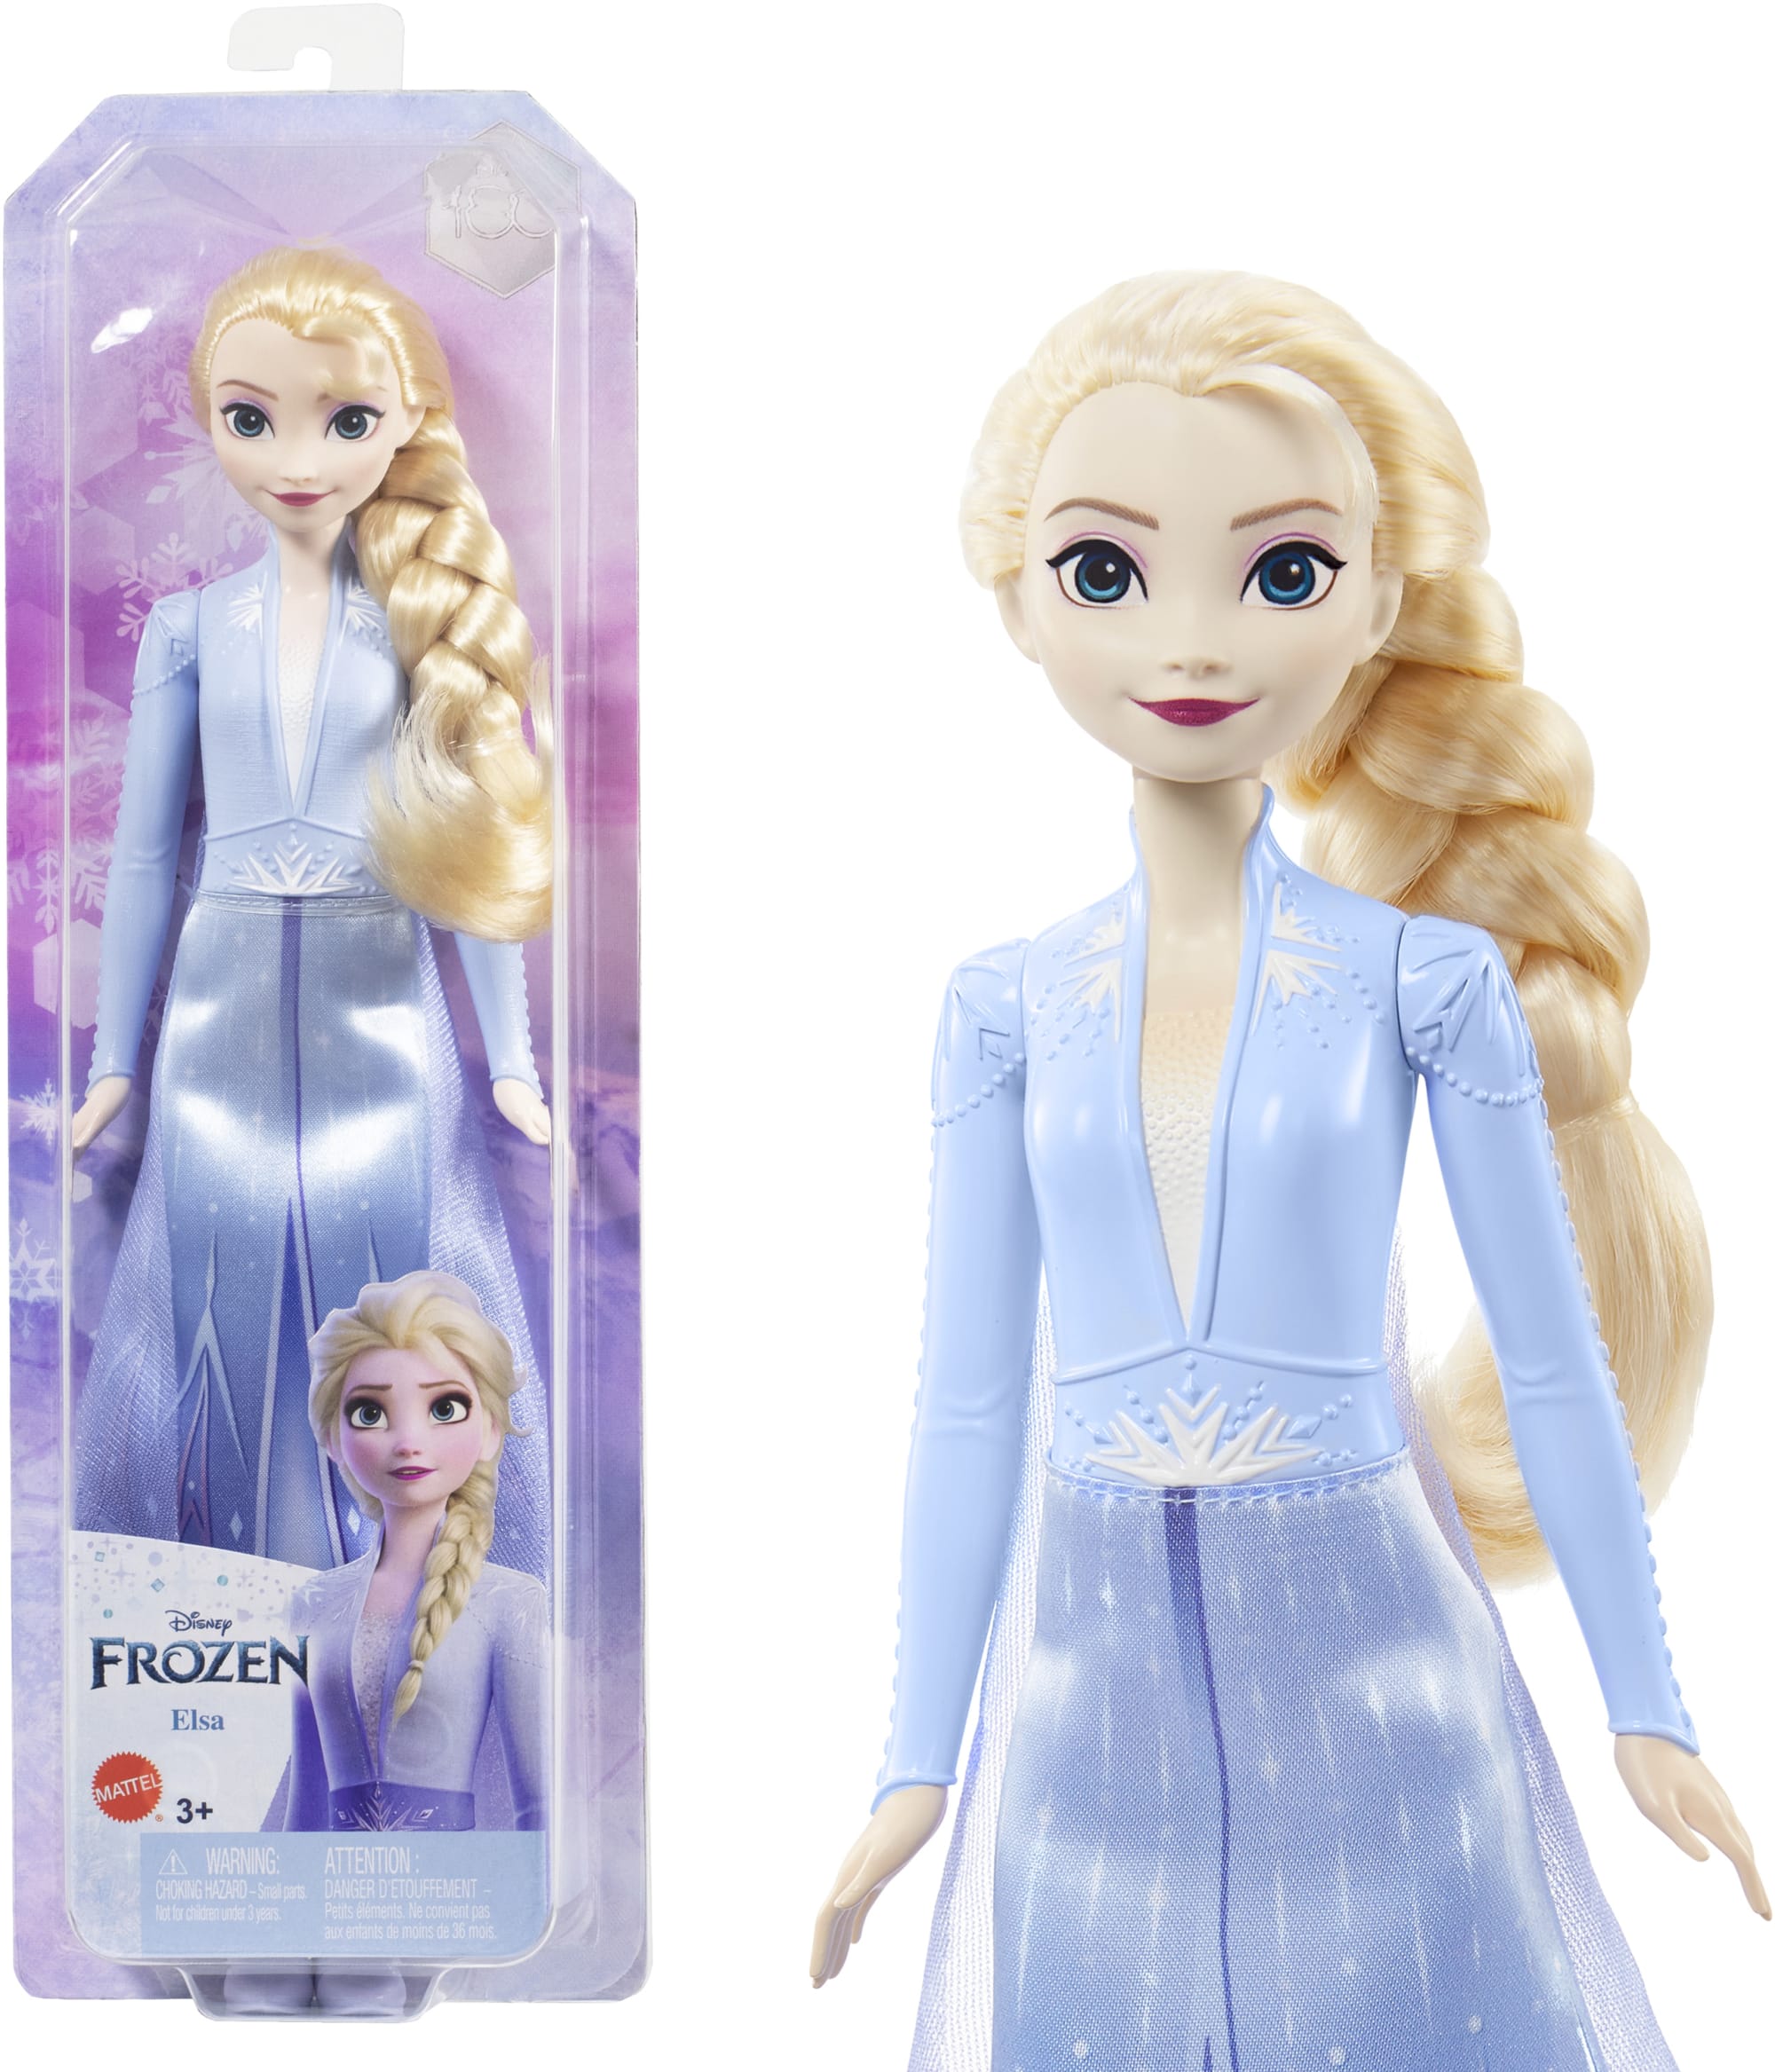 La Reine des Neiges 2 : les meilleures poupées